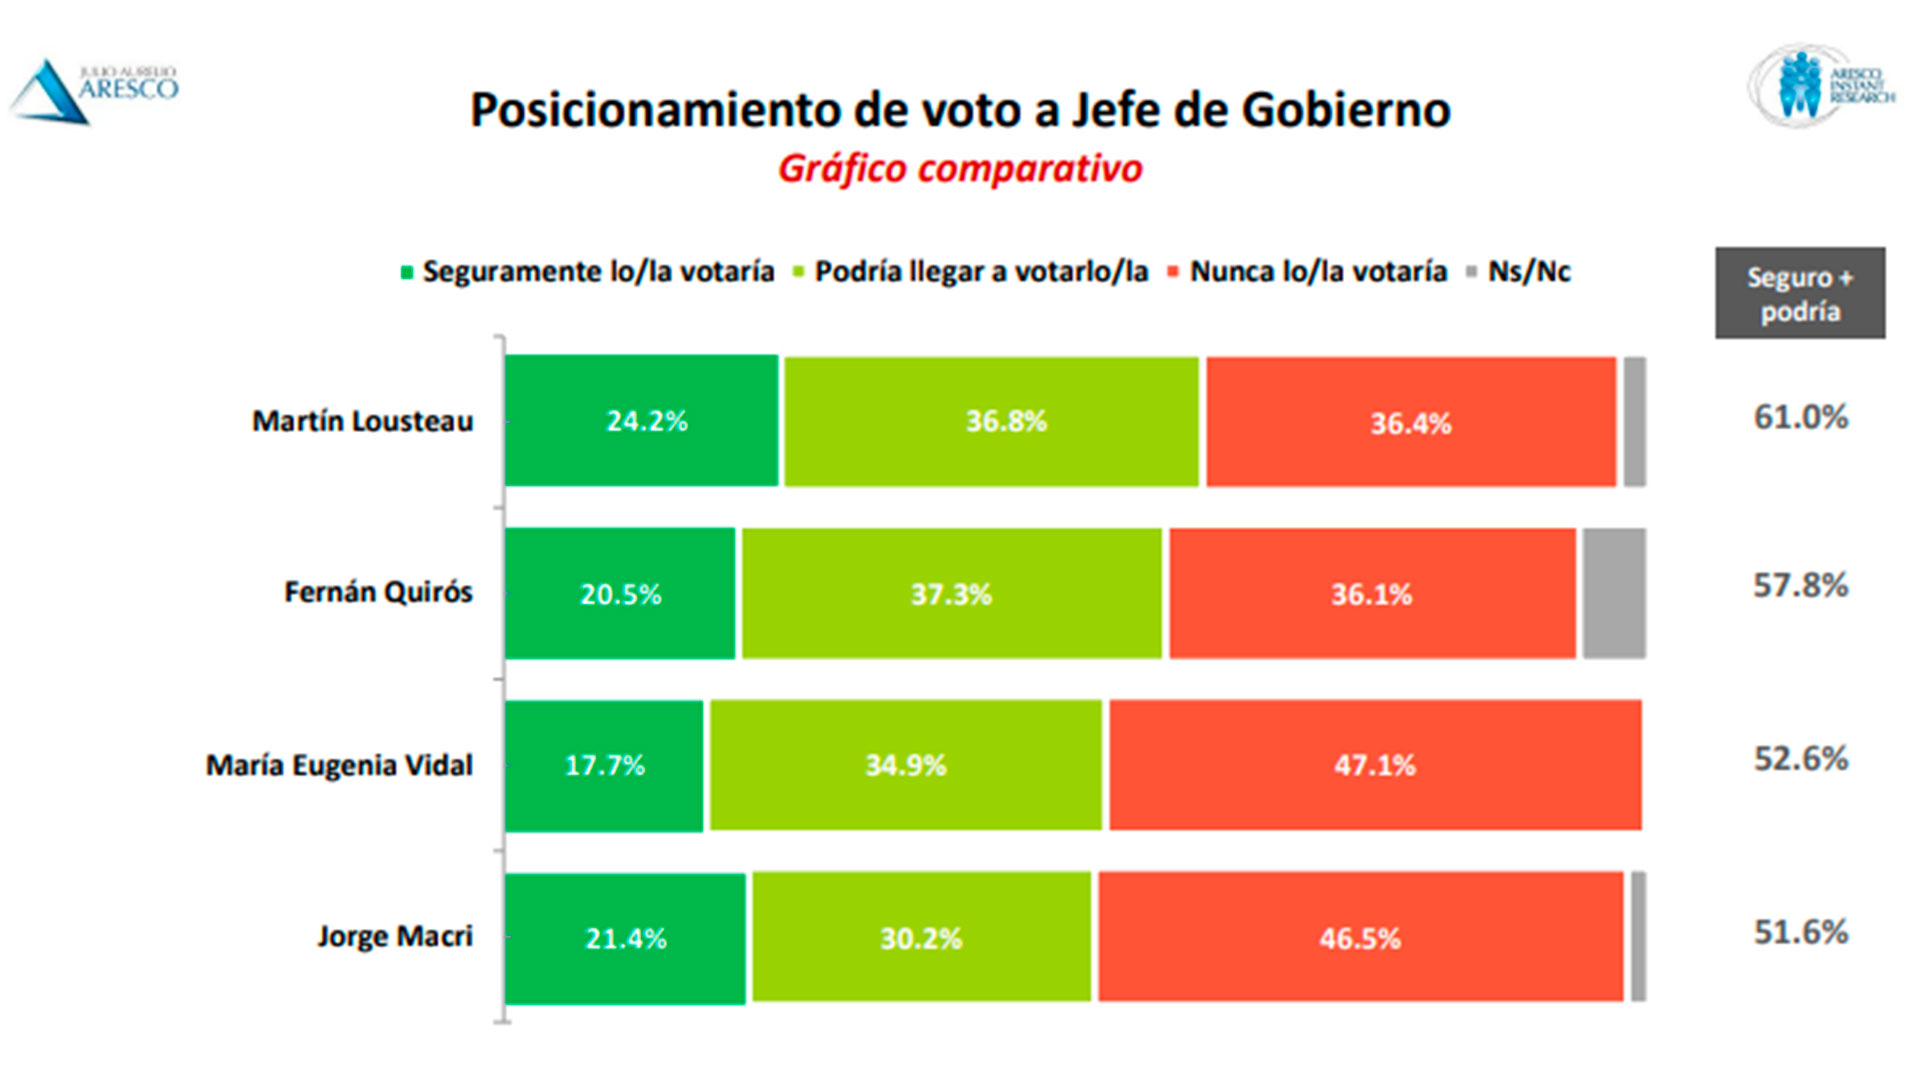 Intención de voto PASO en CABA: Macri tiene ventaja sobre Quirós, pero el ministro de Salud podría tener un techo más alto